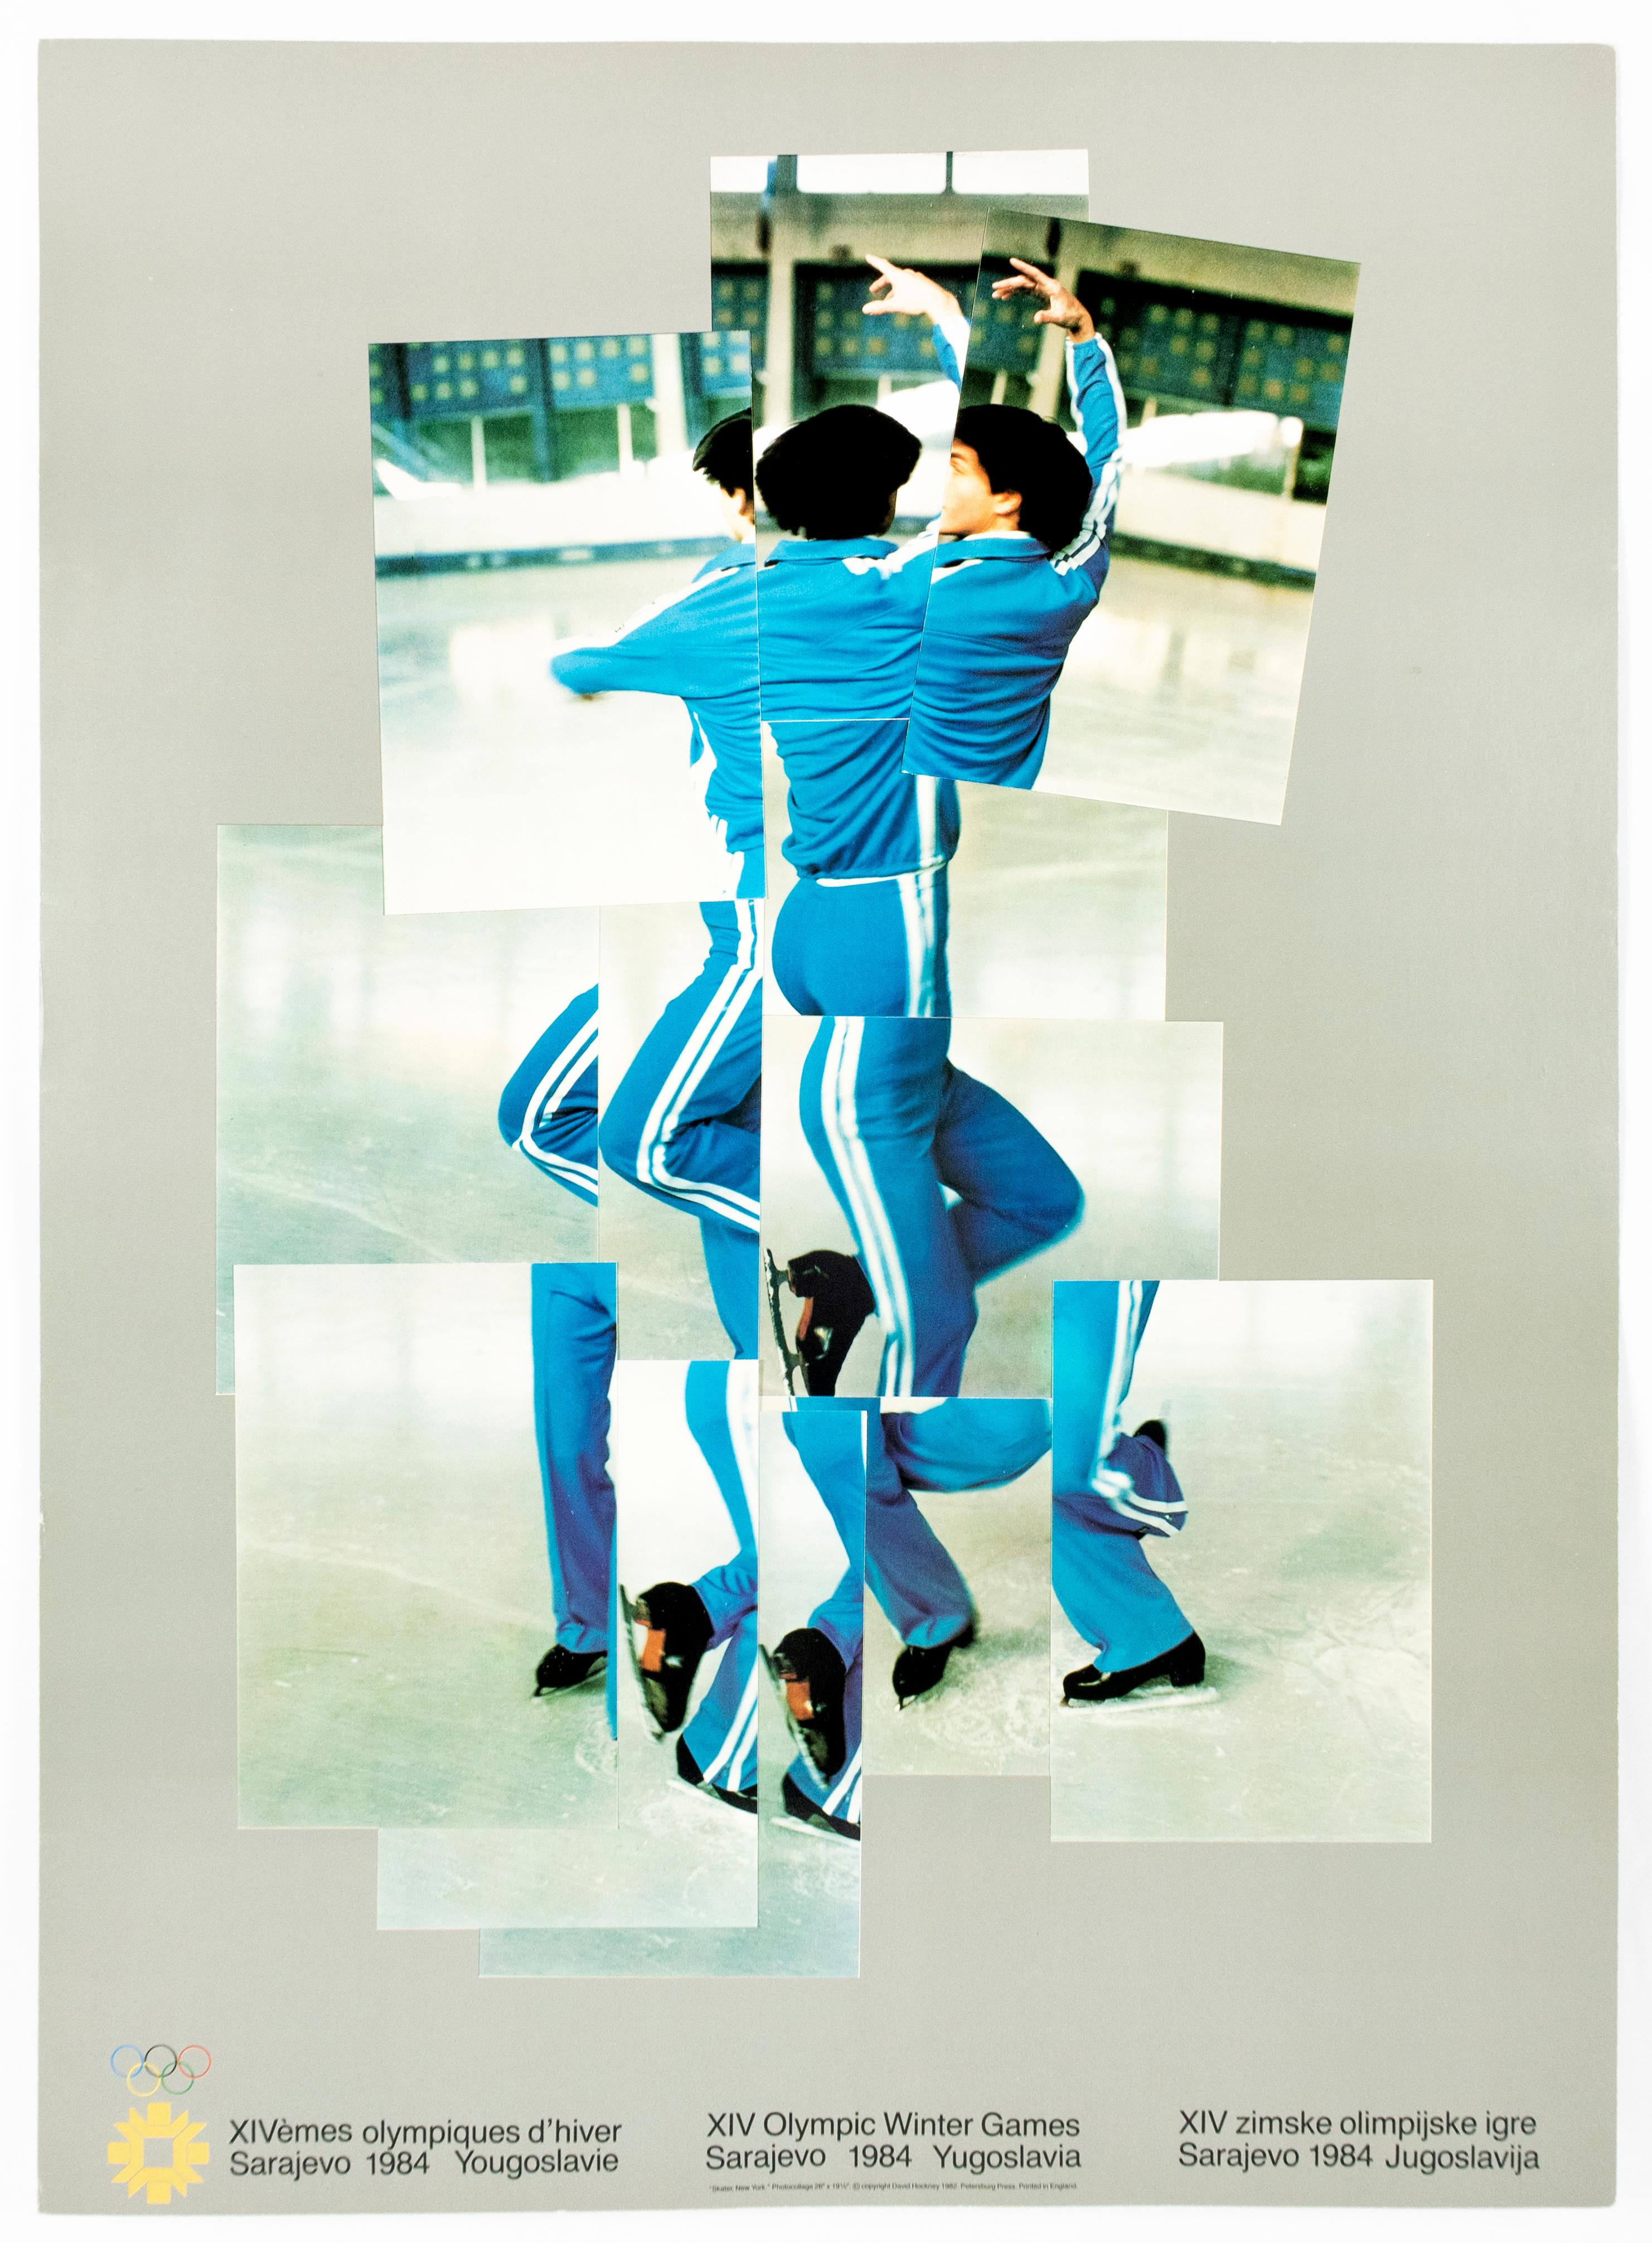 Affiche vintage de David Hockney représentant les Jeux olympiques d'hiver XIV, 1984, The Skater